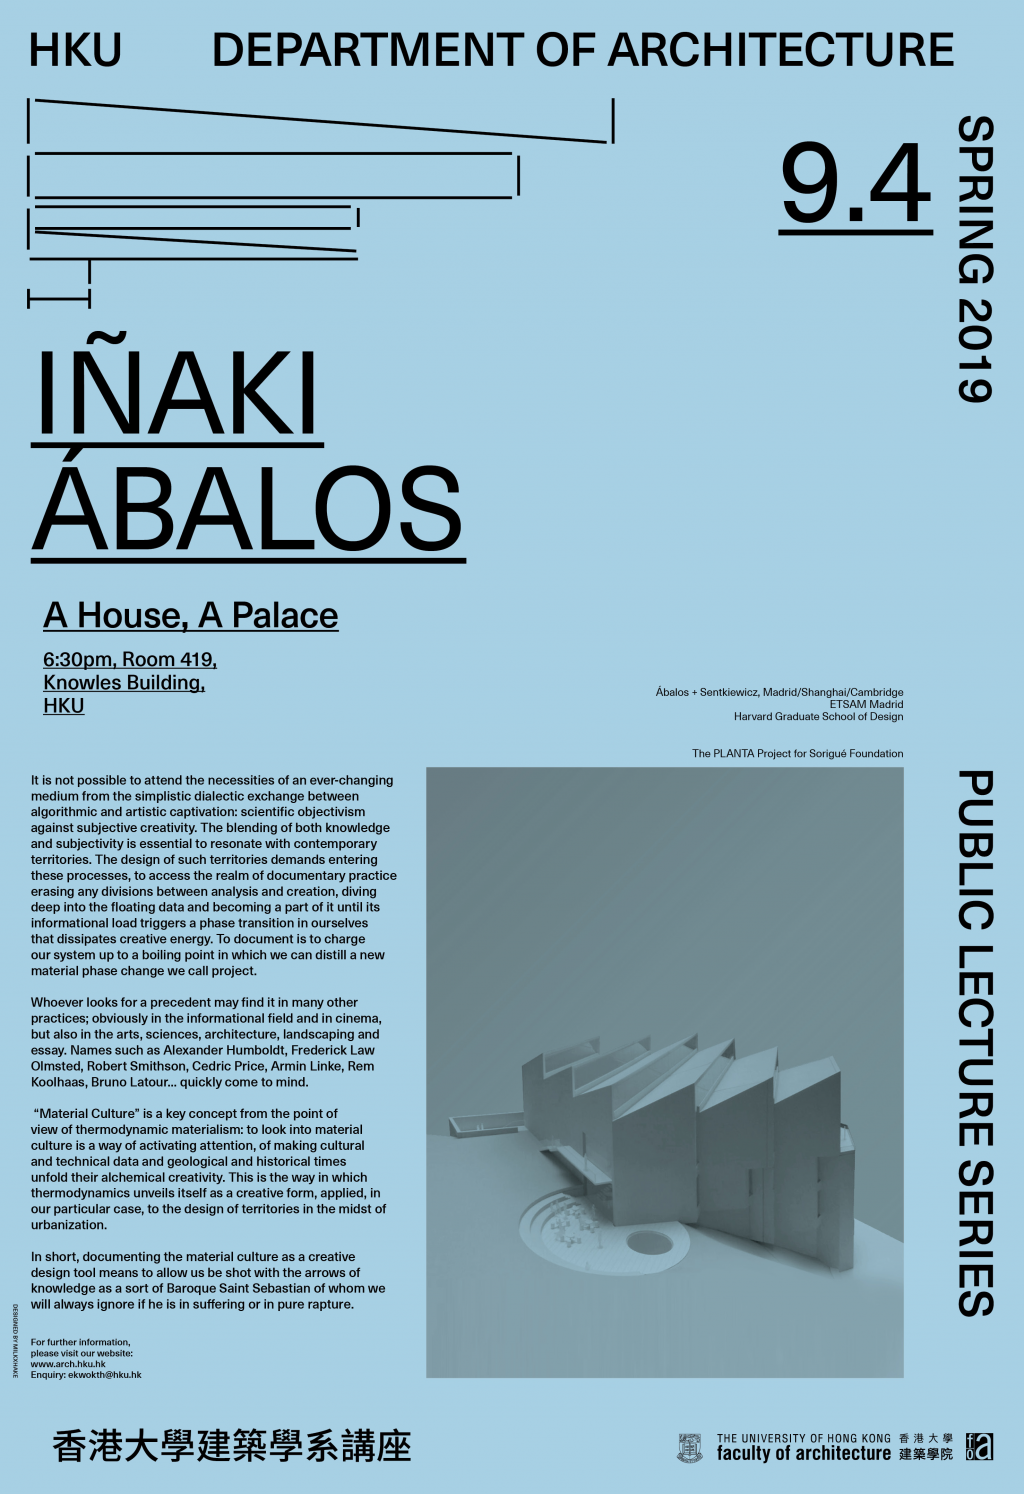 'A House, A Palace' Public Lecture by IÃaki Ãbalos, 18:30-20:00, 9 April 2019